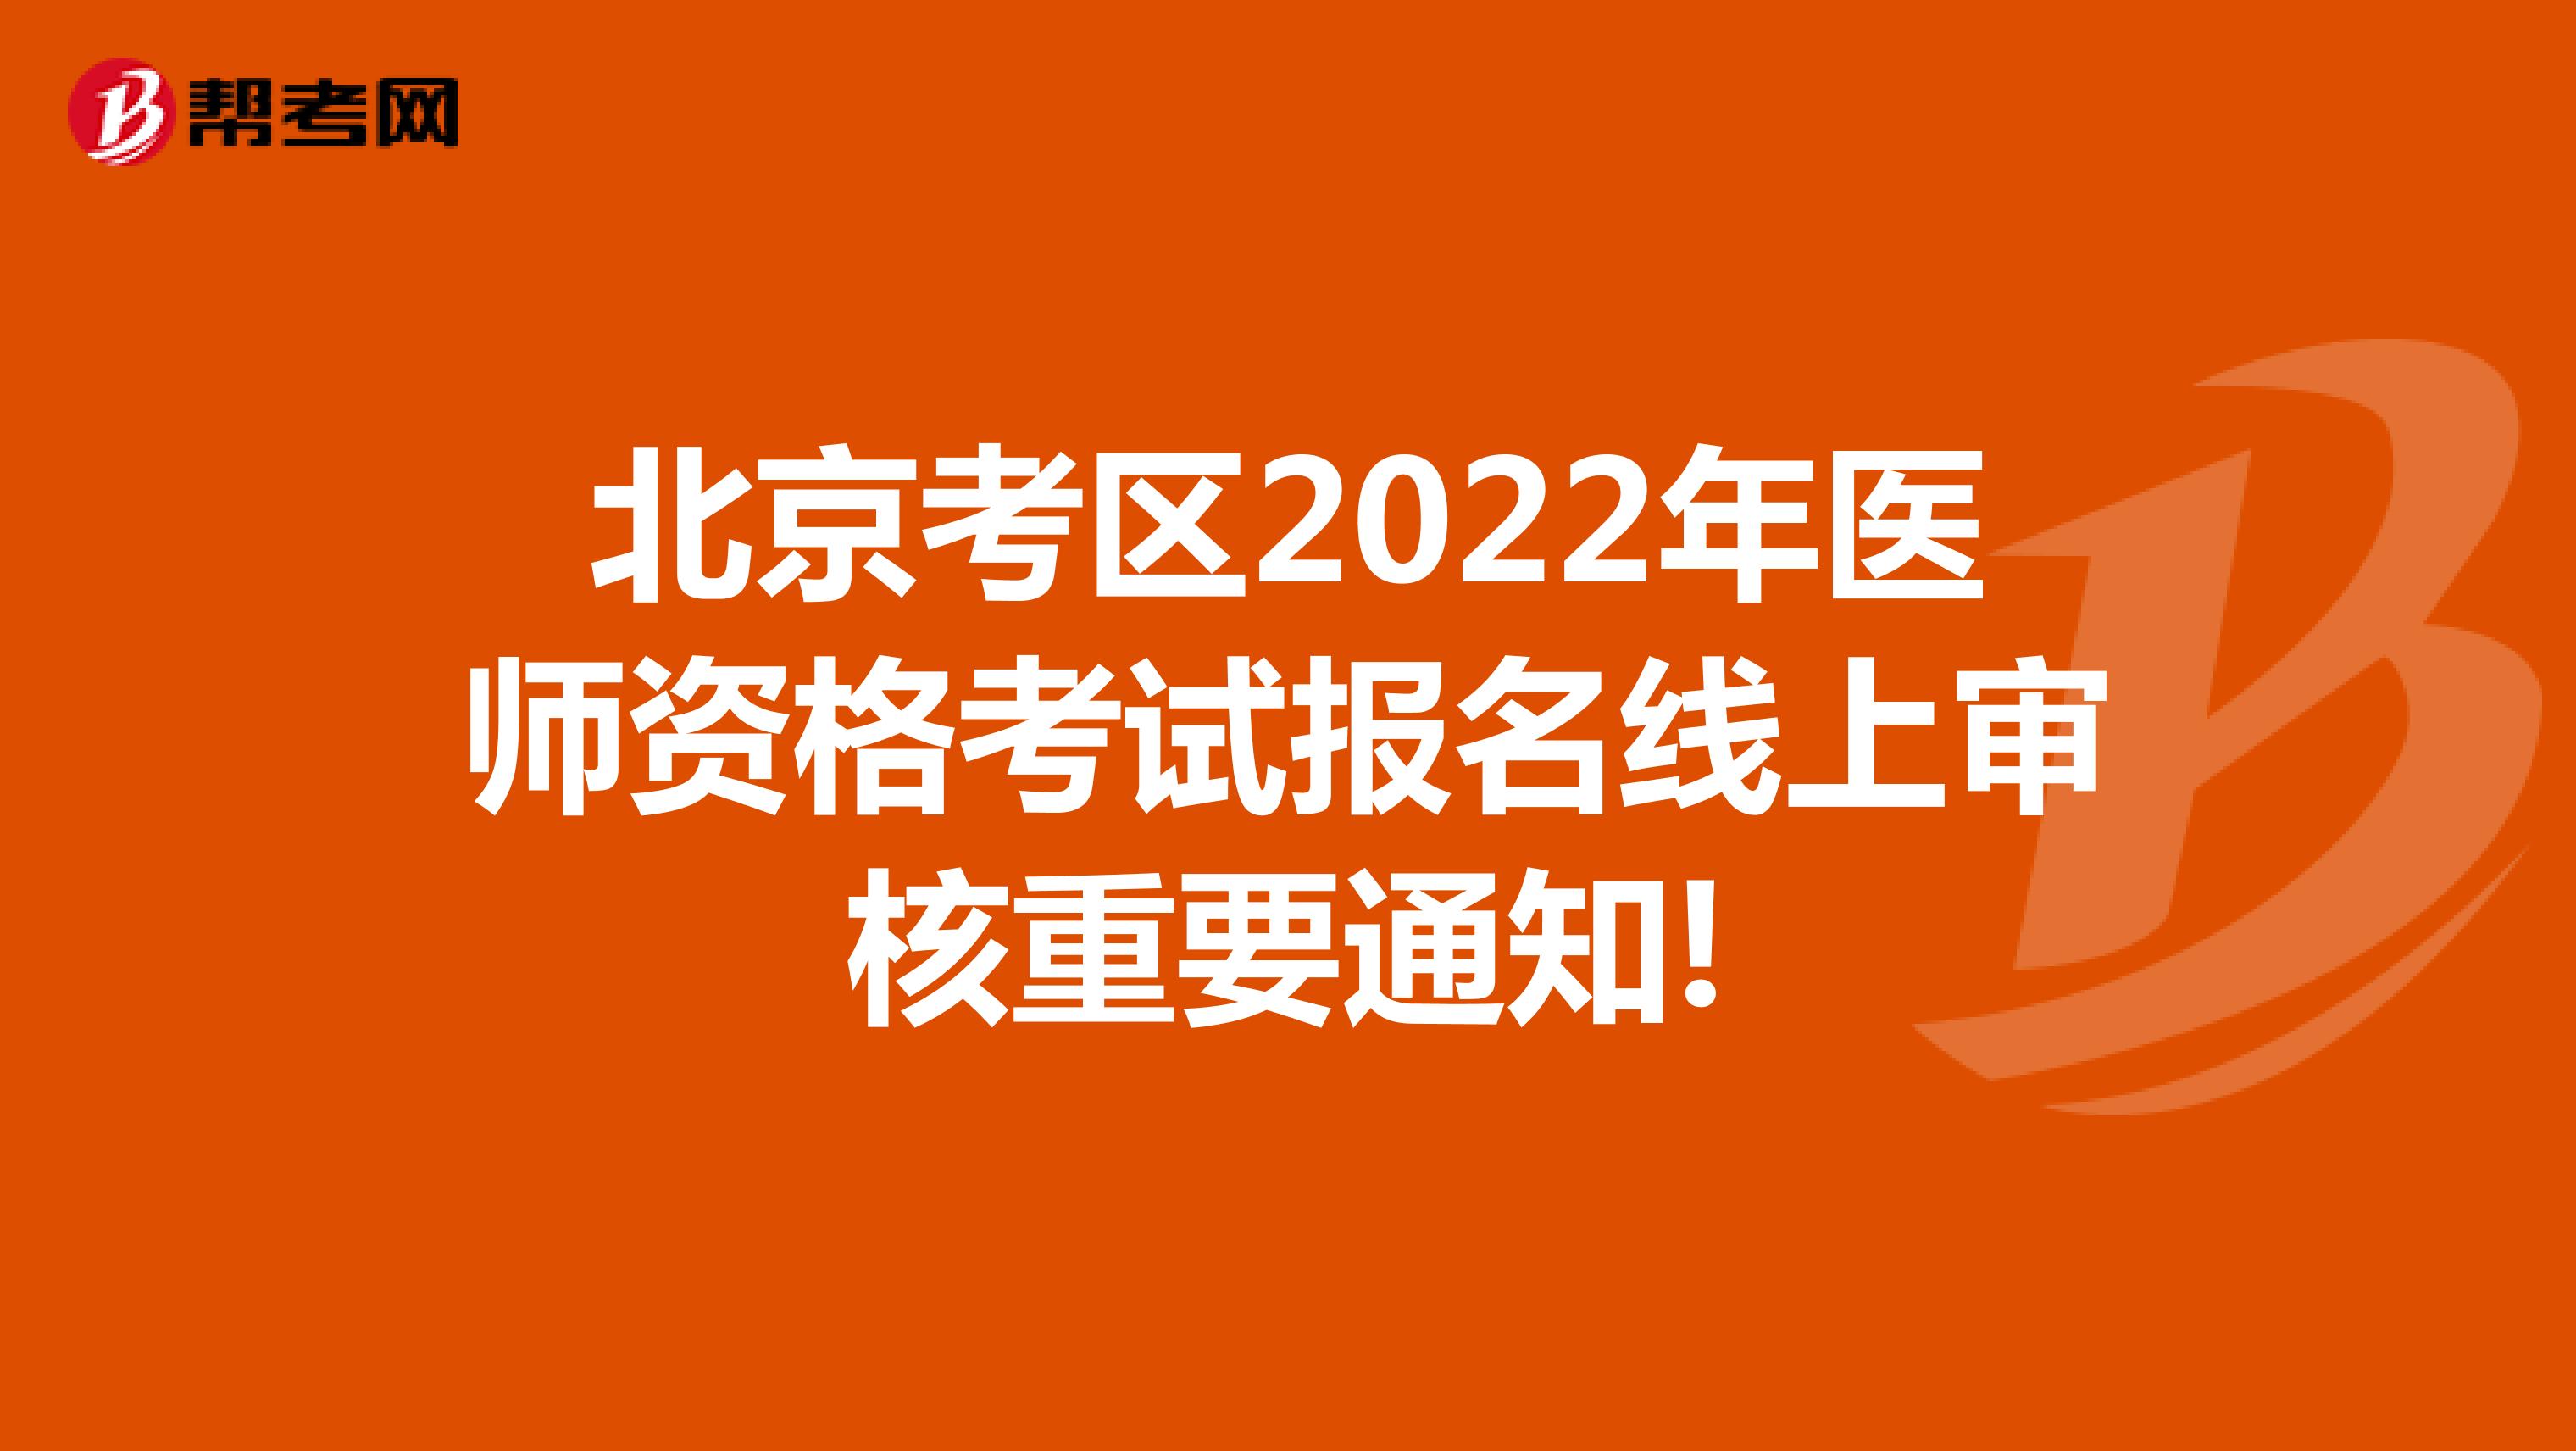 北京考区2022年医师资格考试报名线上审核重要通知!